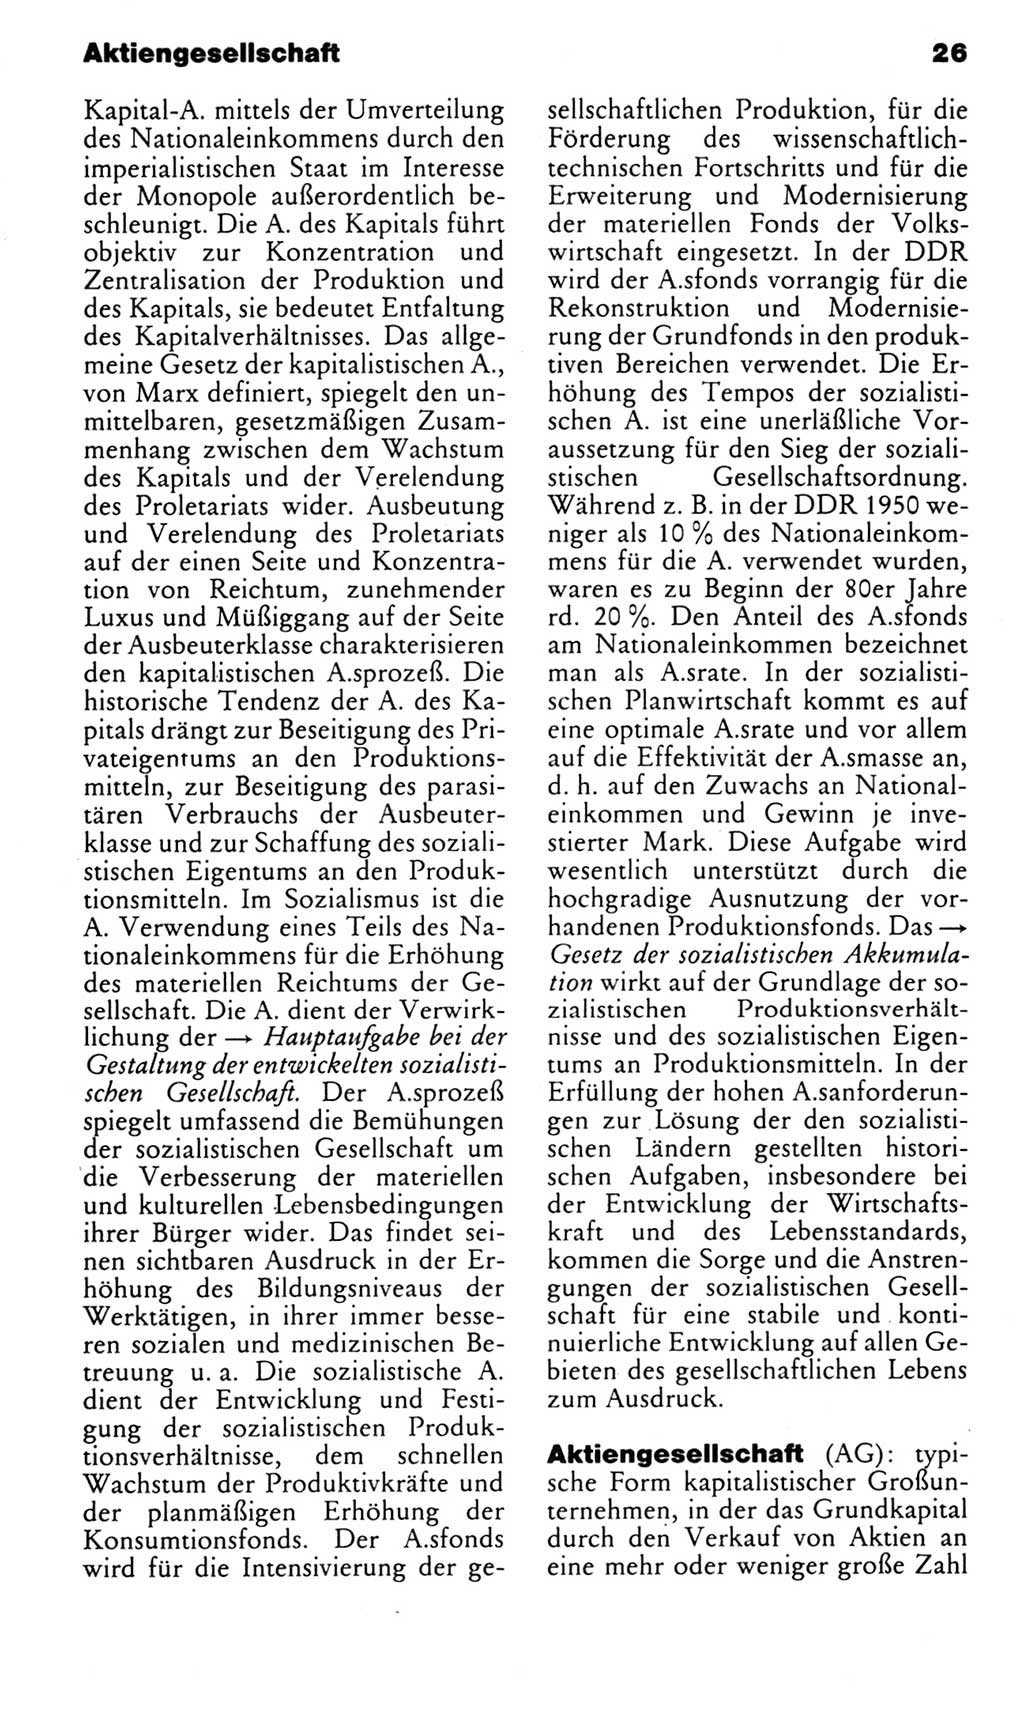 Kleines politisches Wörterbuch [Deutsche Demokratische Republik (DDR)] 1985, Seite 26 (Kl. pol. Wb. DDR 1985, S. 26)